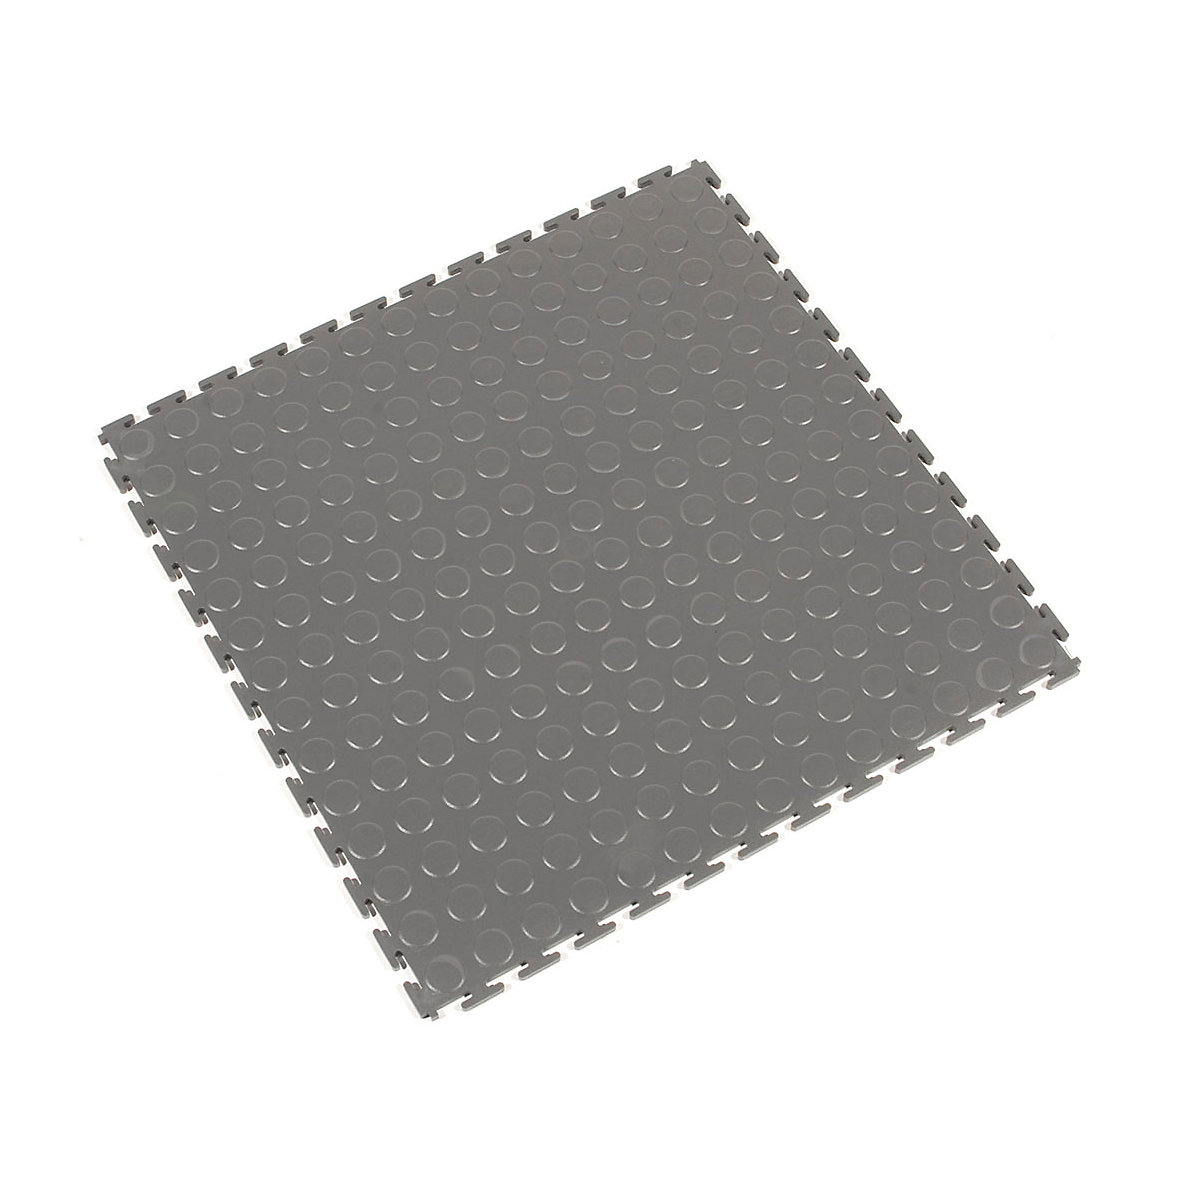 Dalles de sol en PVC Tough-Lock – COBA, surface à bulles, lot de 8, gris-5